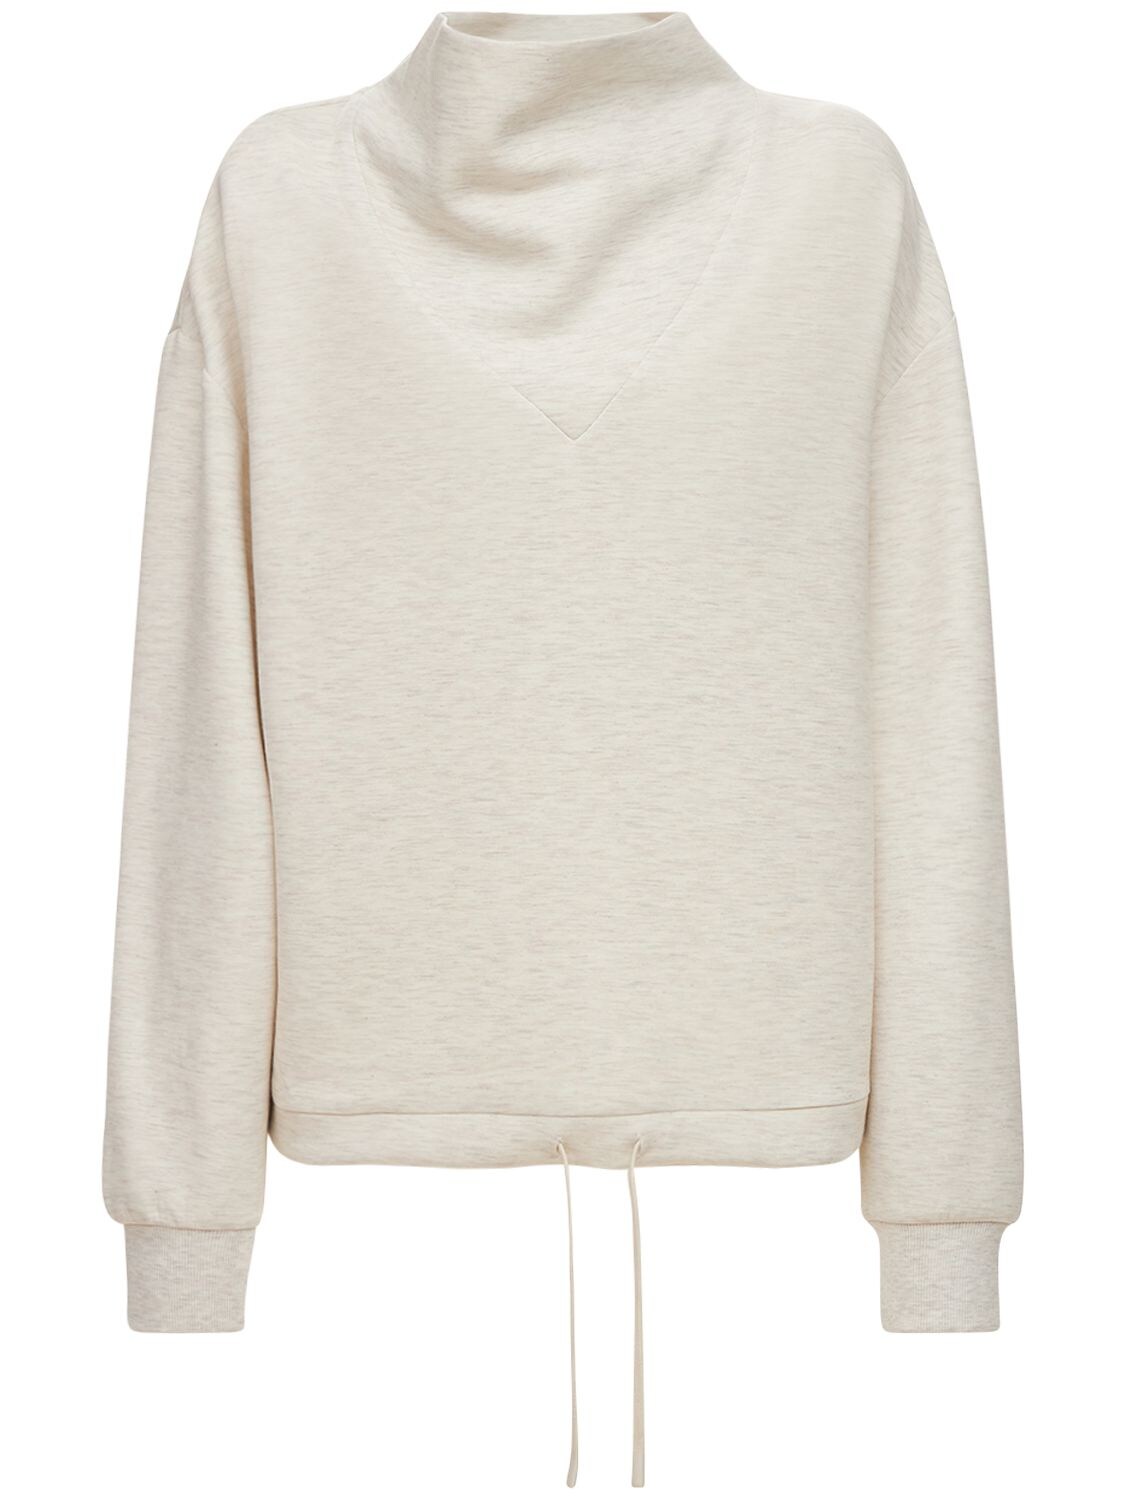 Varley - Betsy sweatshirt - Beige/White | Luisaviaroma